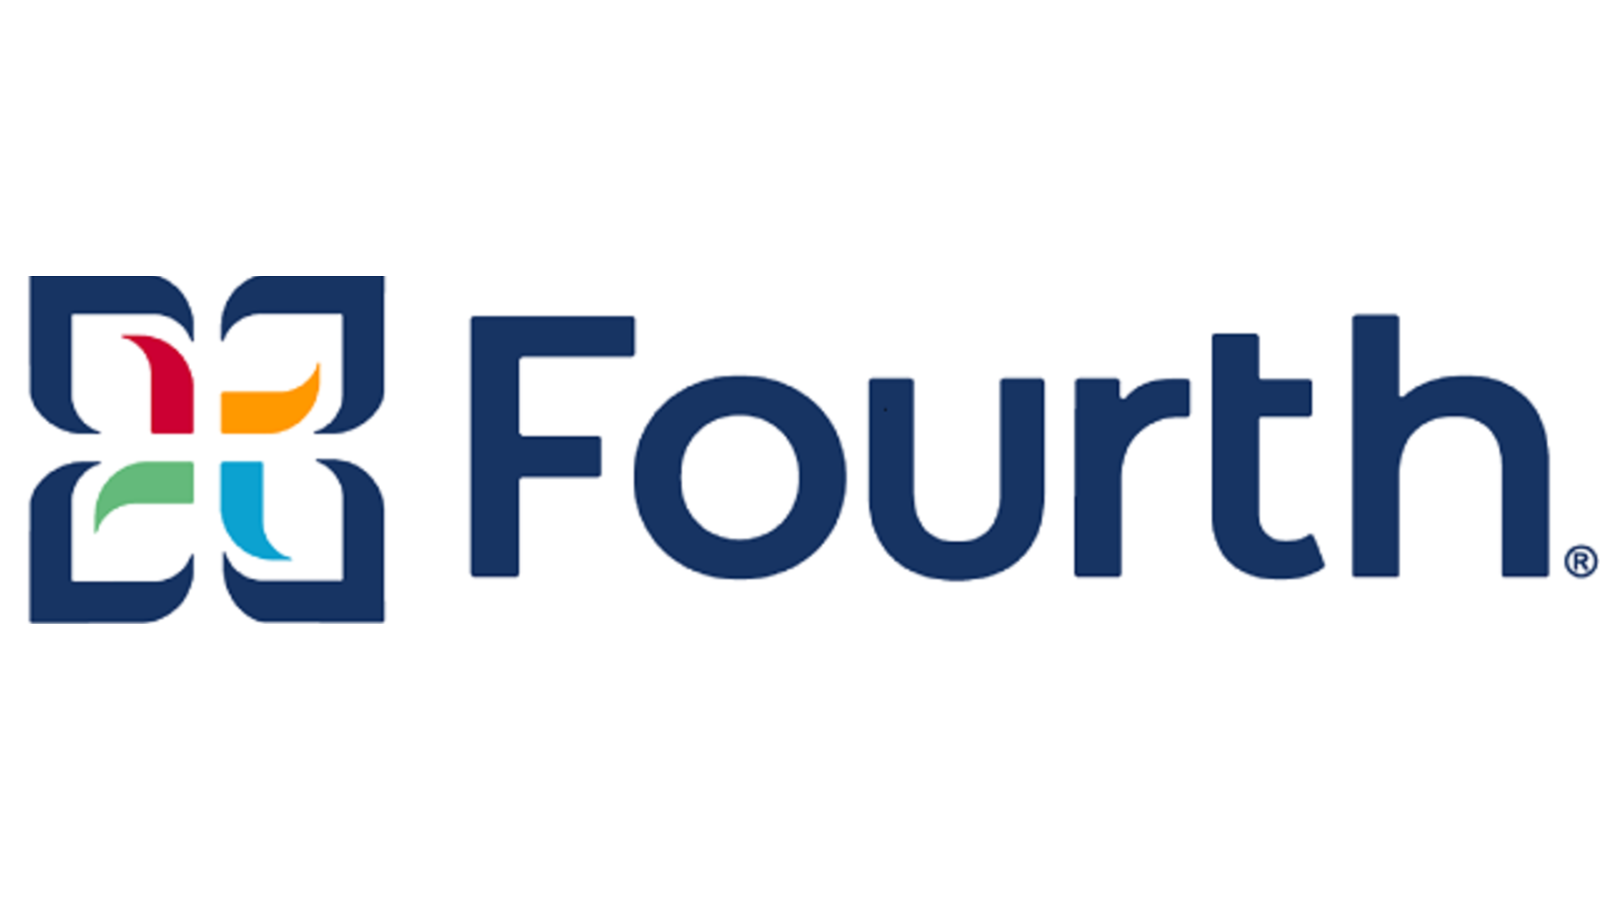 Fourth Logo